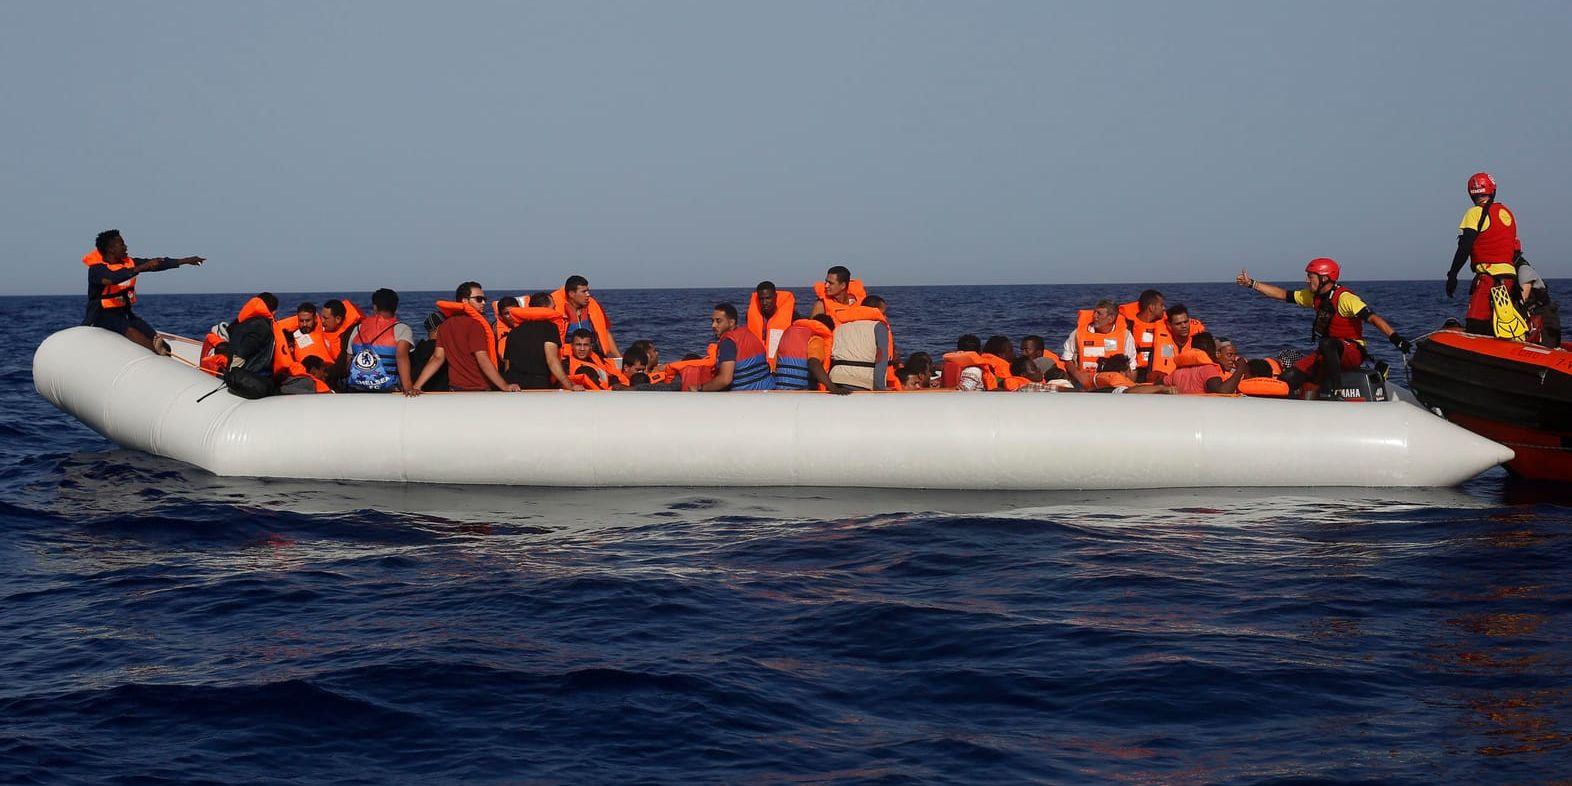 Antalet migranter som dör på Medelhavet minskade förra året. På bilden har en grupp migranter precis räddats av en hjälporganisation utanför Libyens kust.